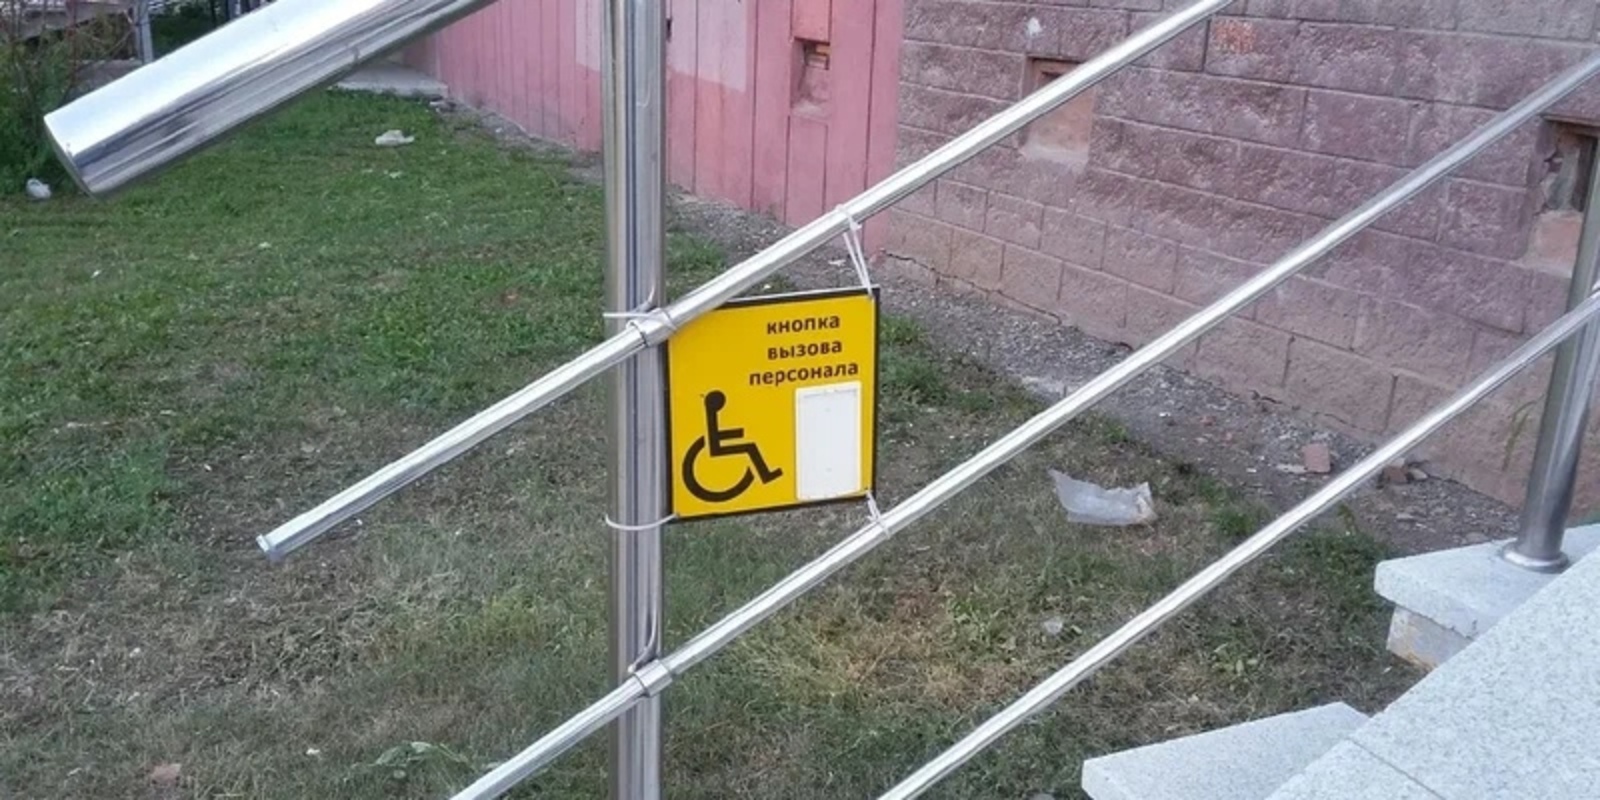 Названы муниципалитеты Башкирии с высоким уровнем инвалидности среди детей и подростков